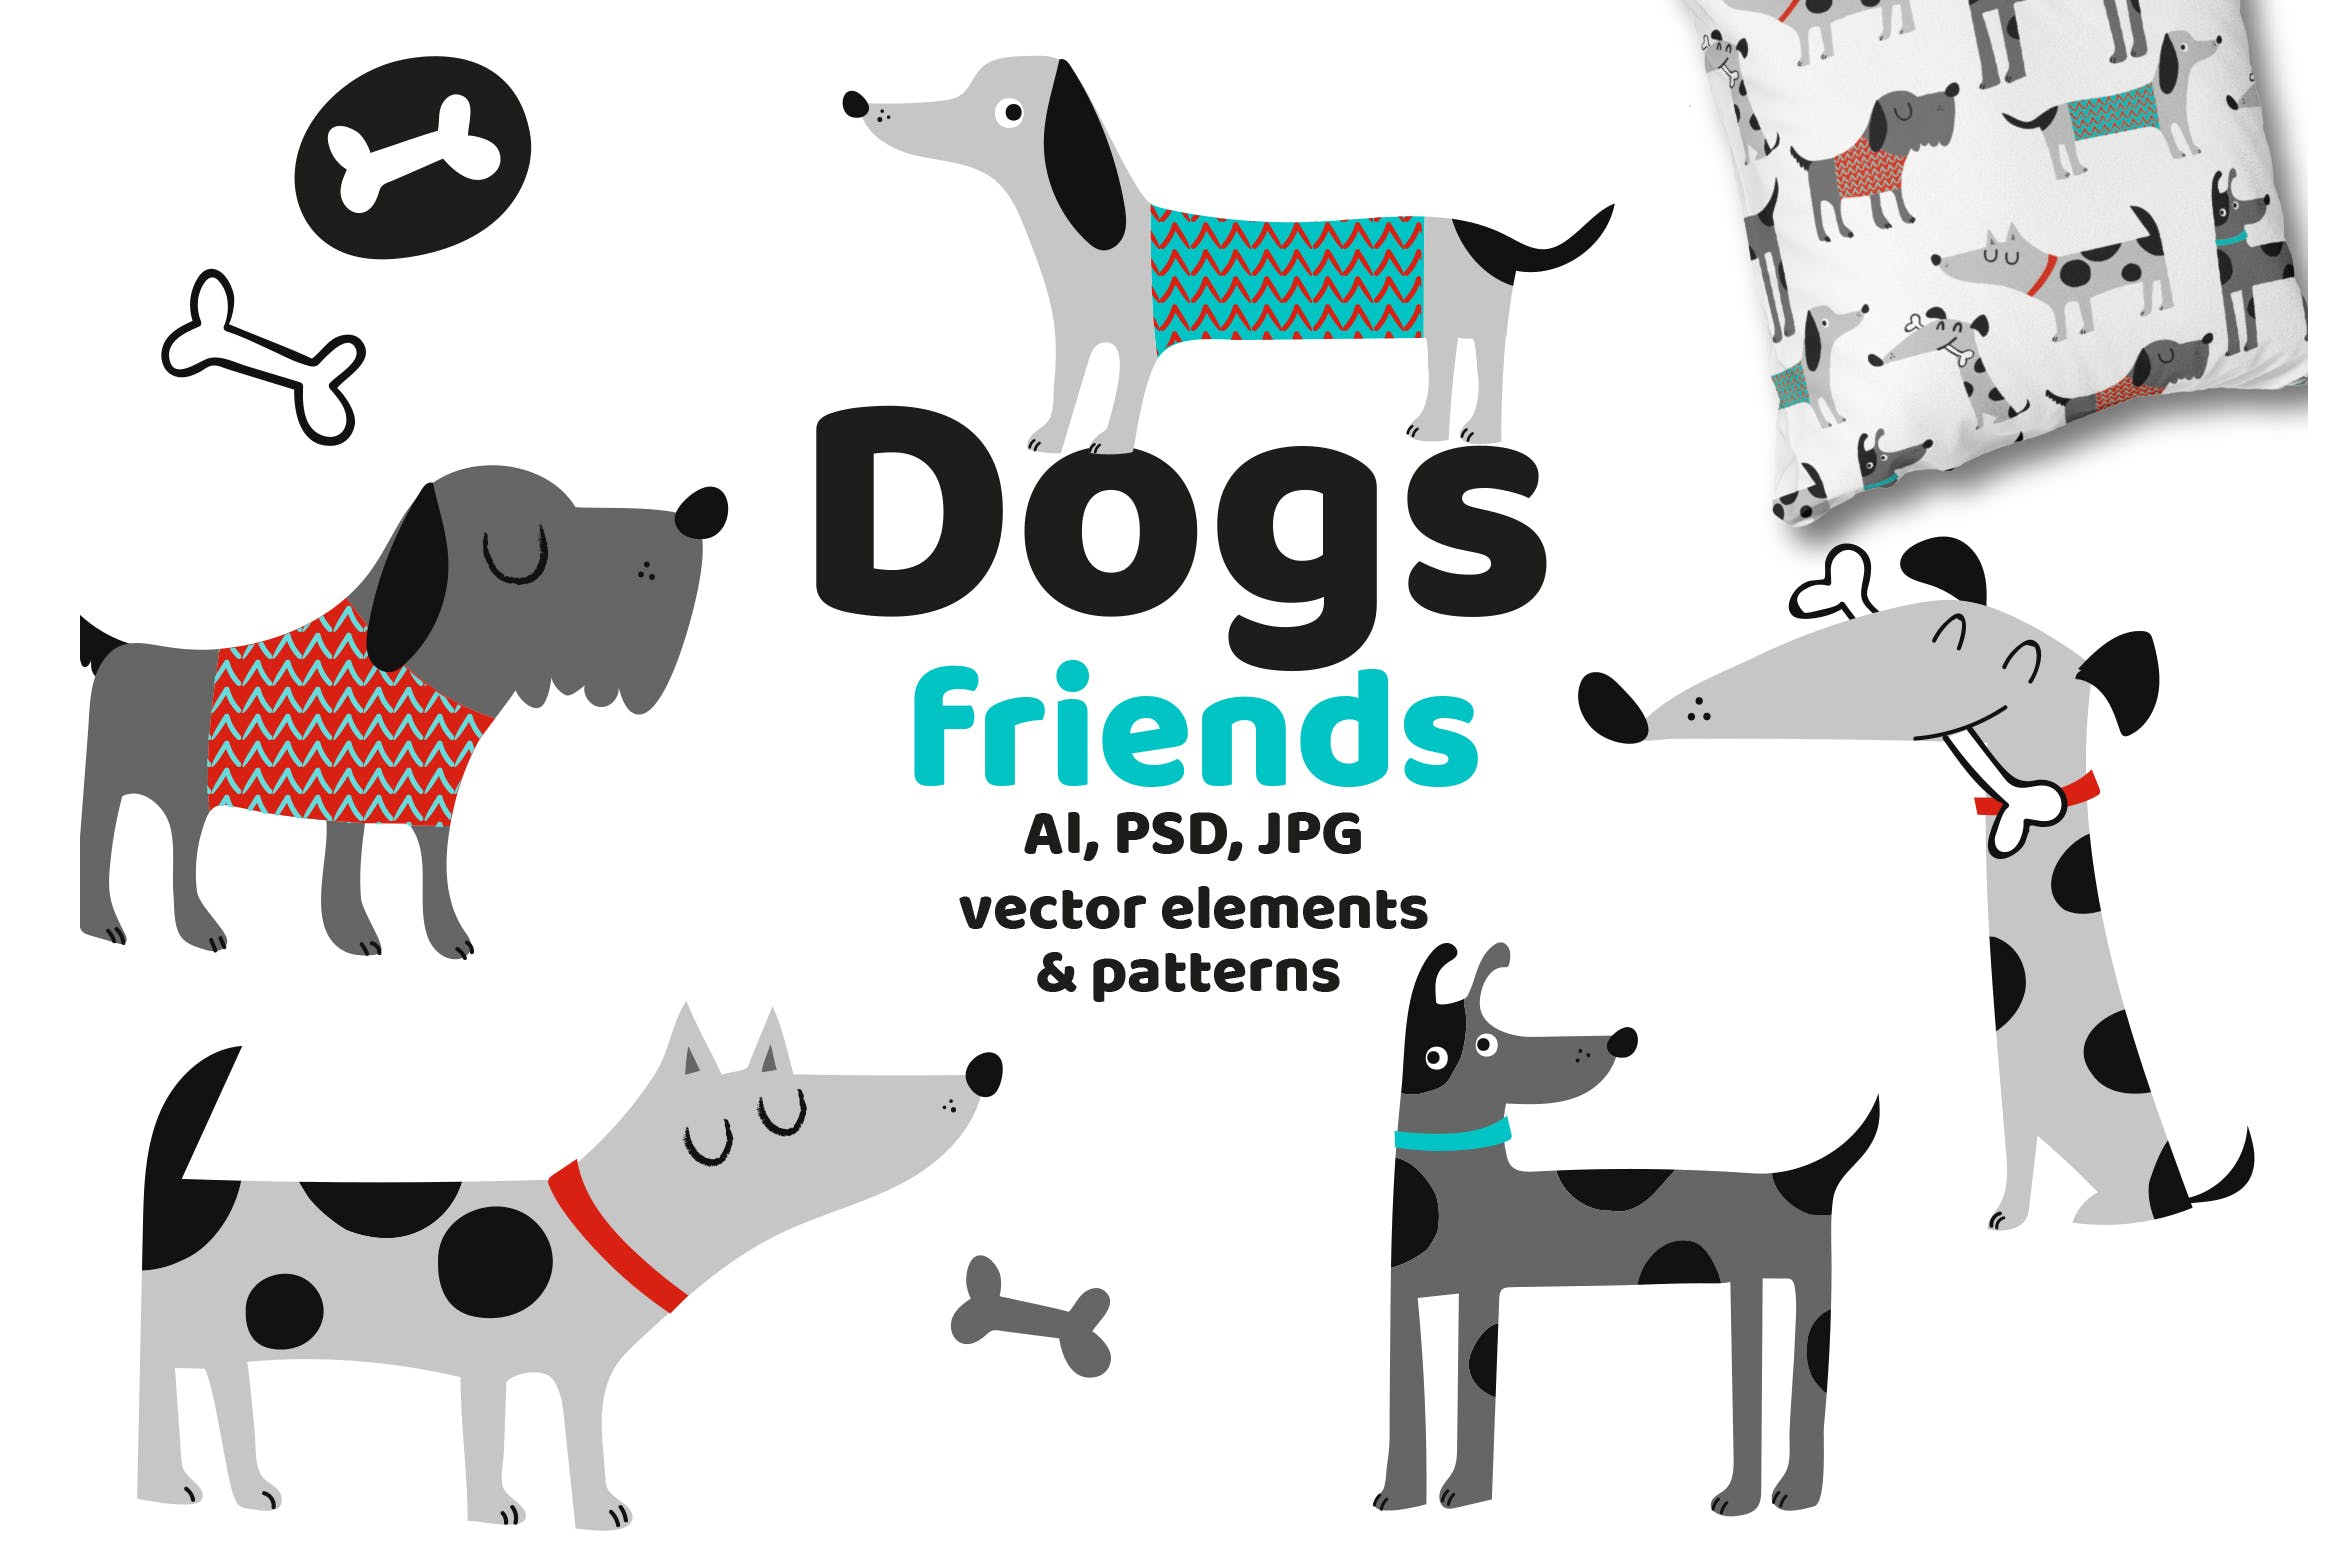 可爱卡通动物手绘图案背景蚂蚁素材精选 Dogs Friends插图